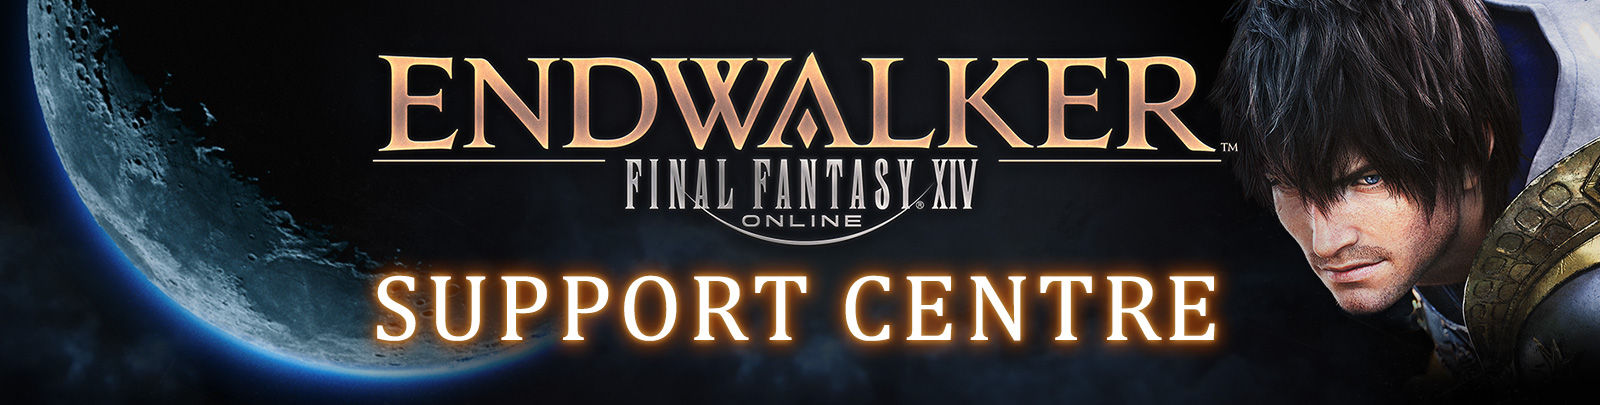 Square Enix Support Centre - - FINAL FANTASY XIV